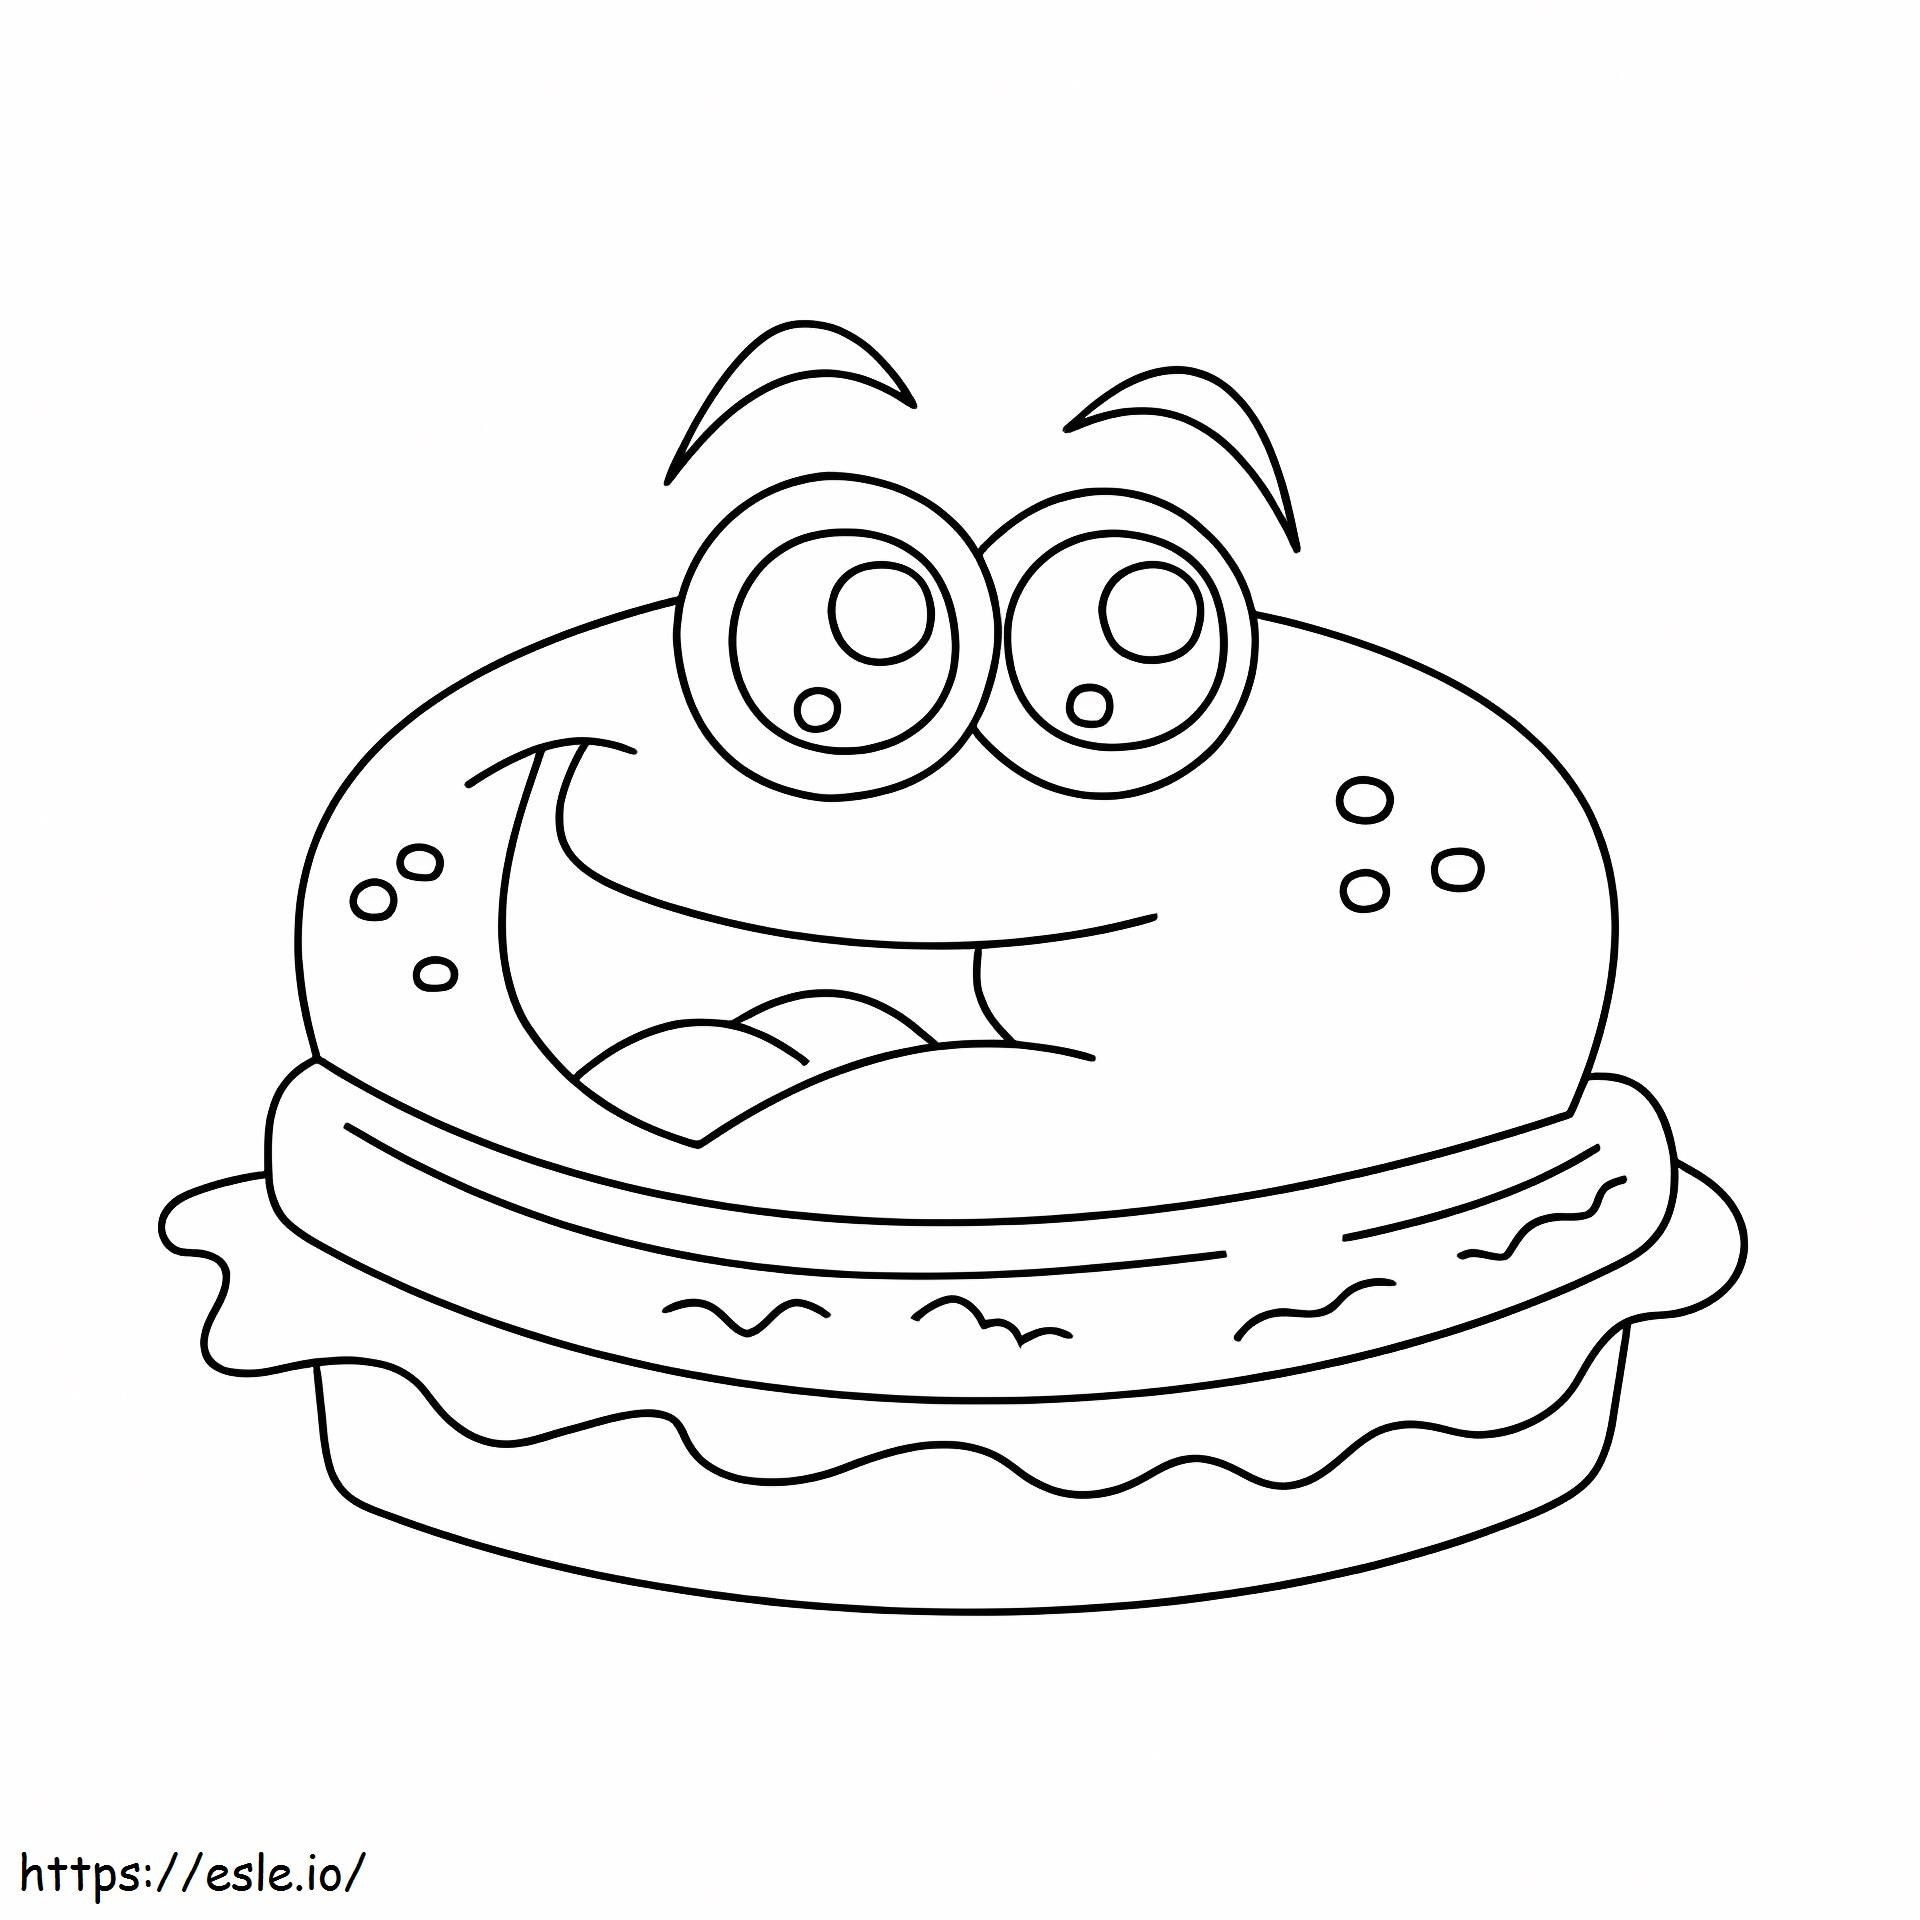 Cartoon Hamburger coloring page